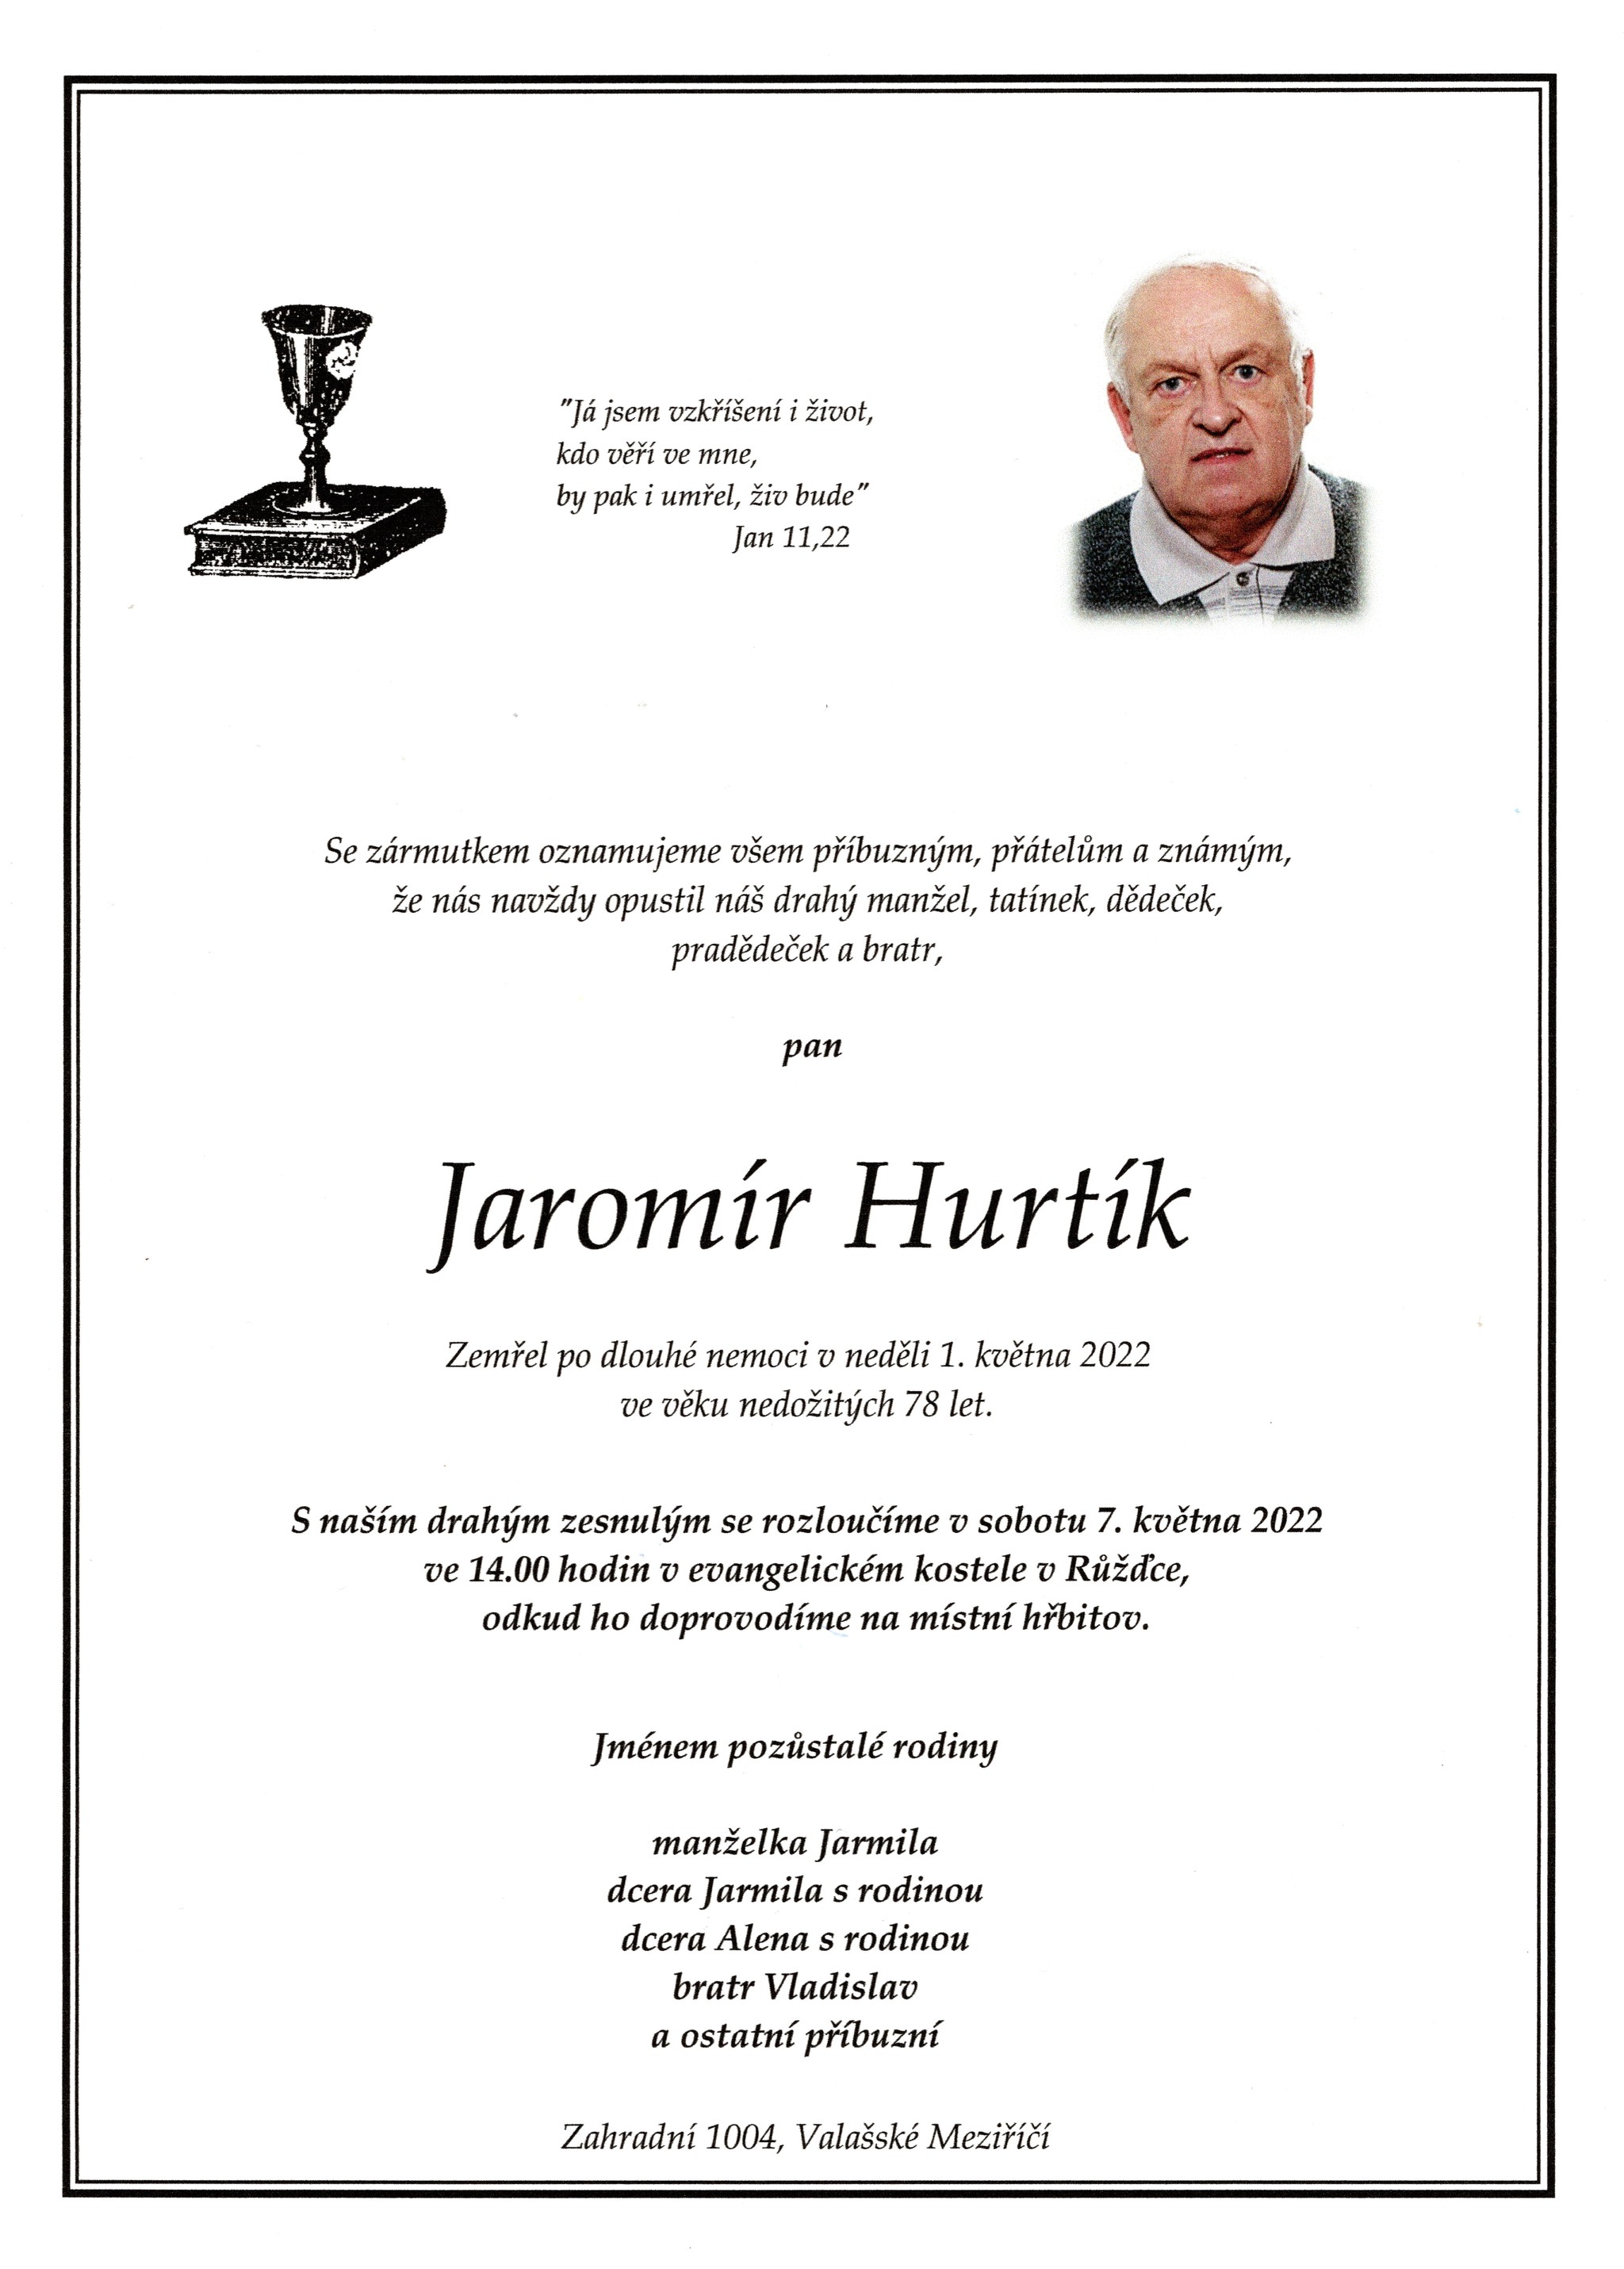 Jaromír Hurtík